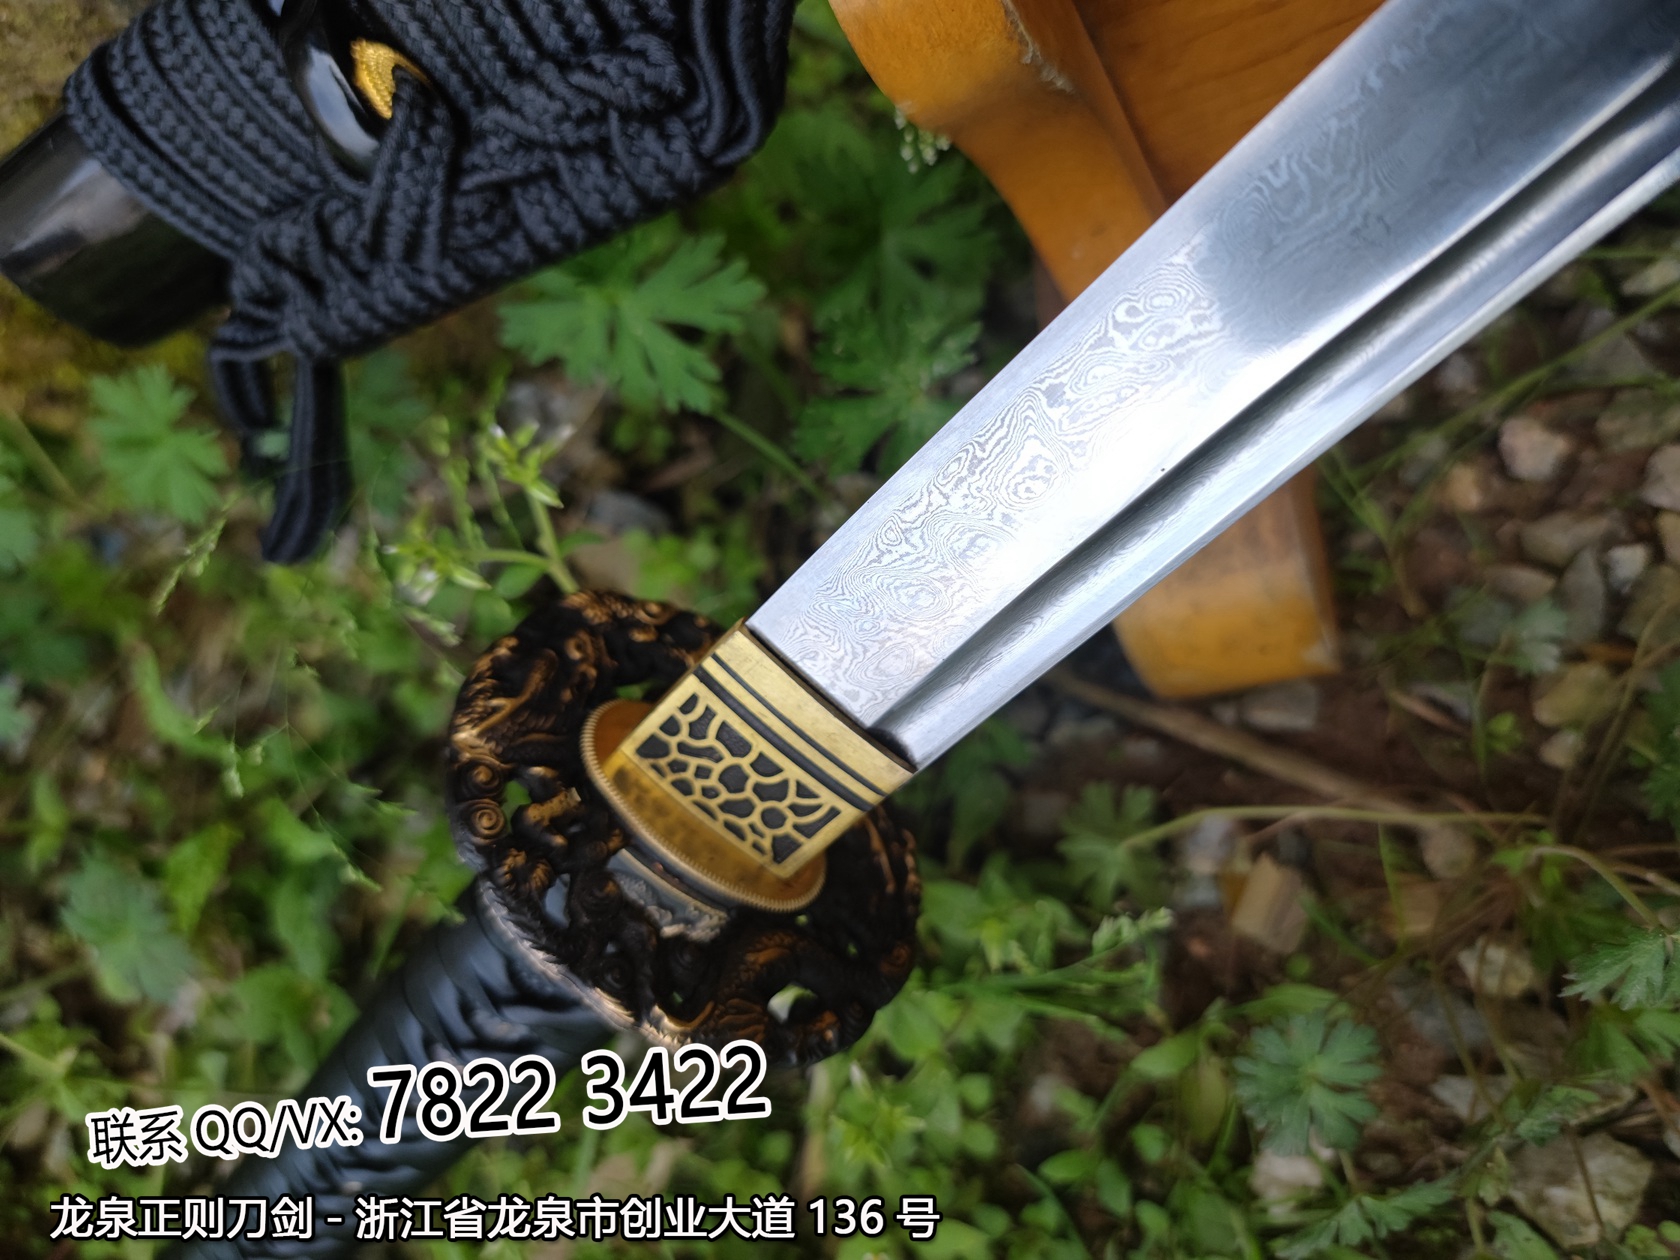 细小云龙铜装武士刀,武士刀,中国武士刀,龙泉剑,日本刀图片